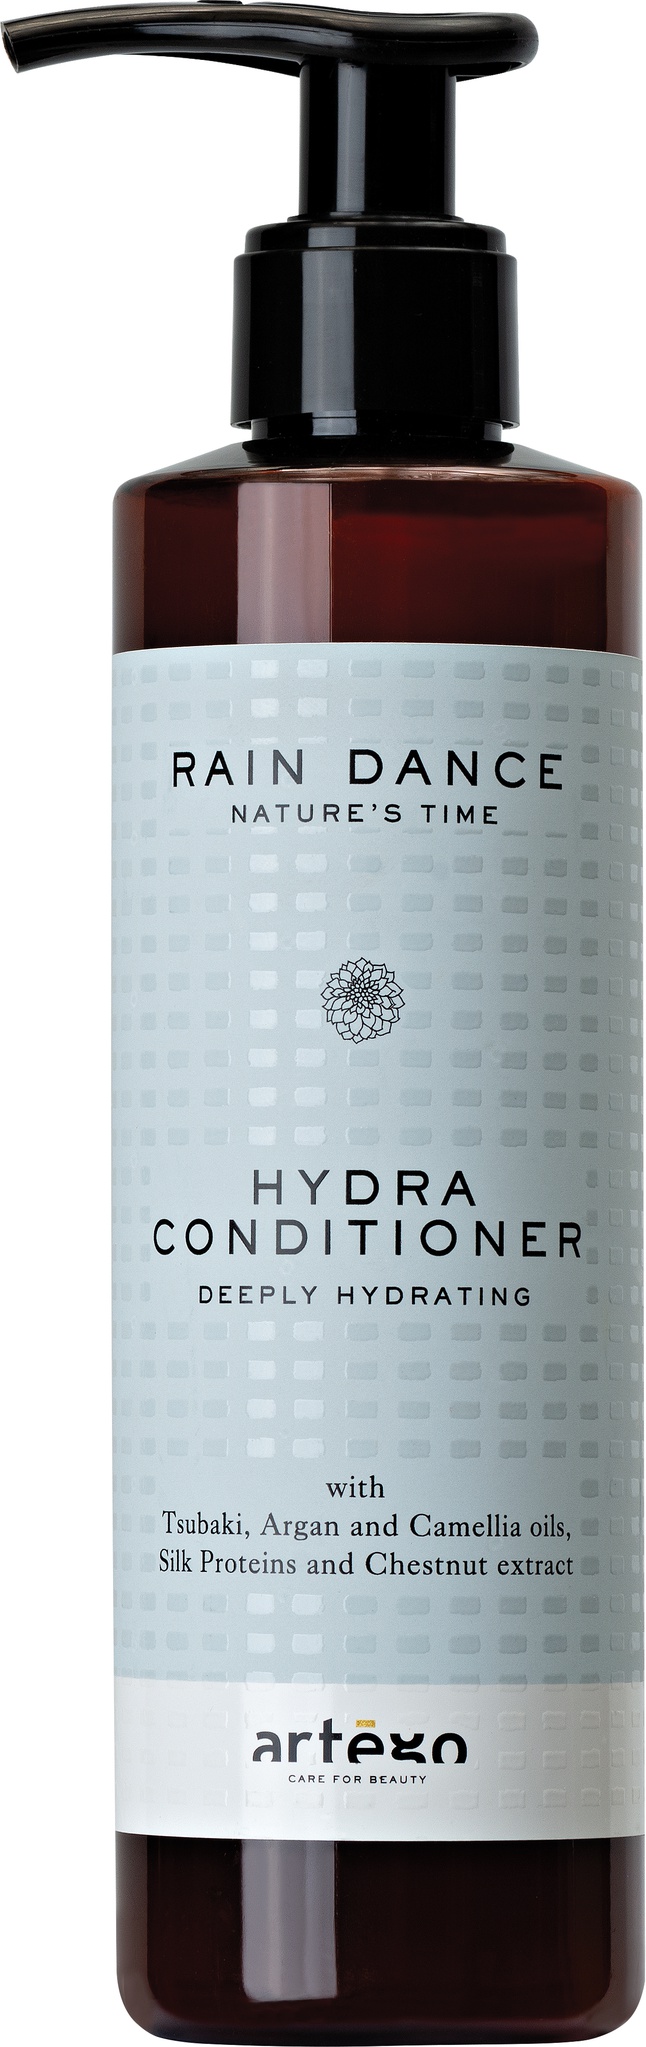 artègo Rain Dance Hydra Conditioner